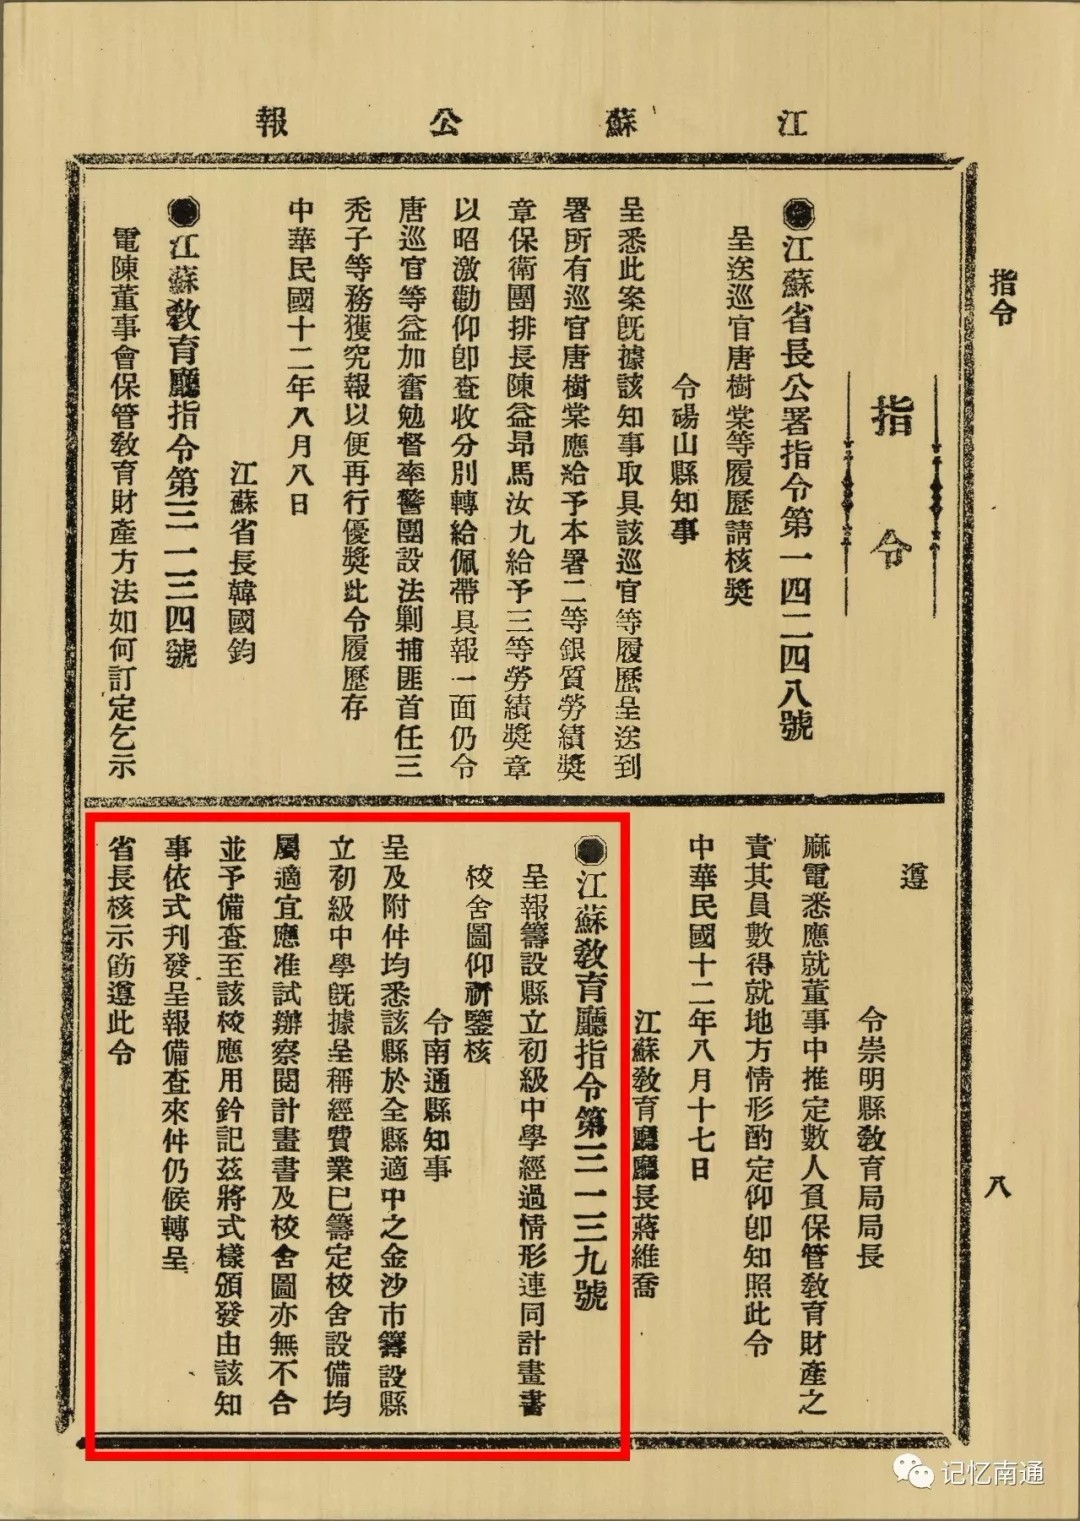 1923年8月，《江苏省公报》关于筹设南通县立初级中学有关内容书影.webp.jpg